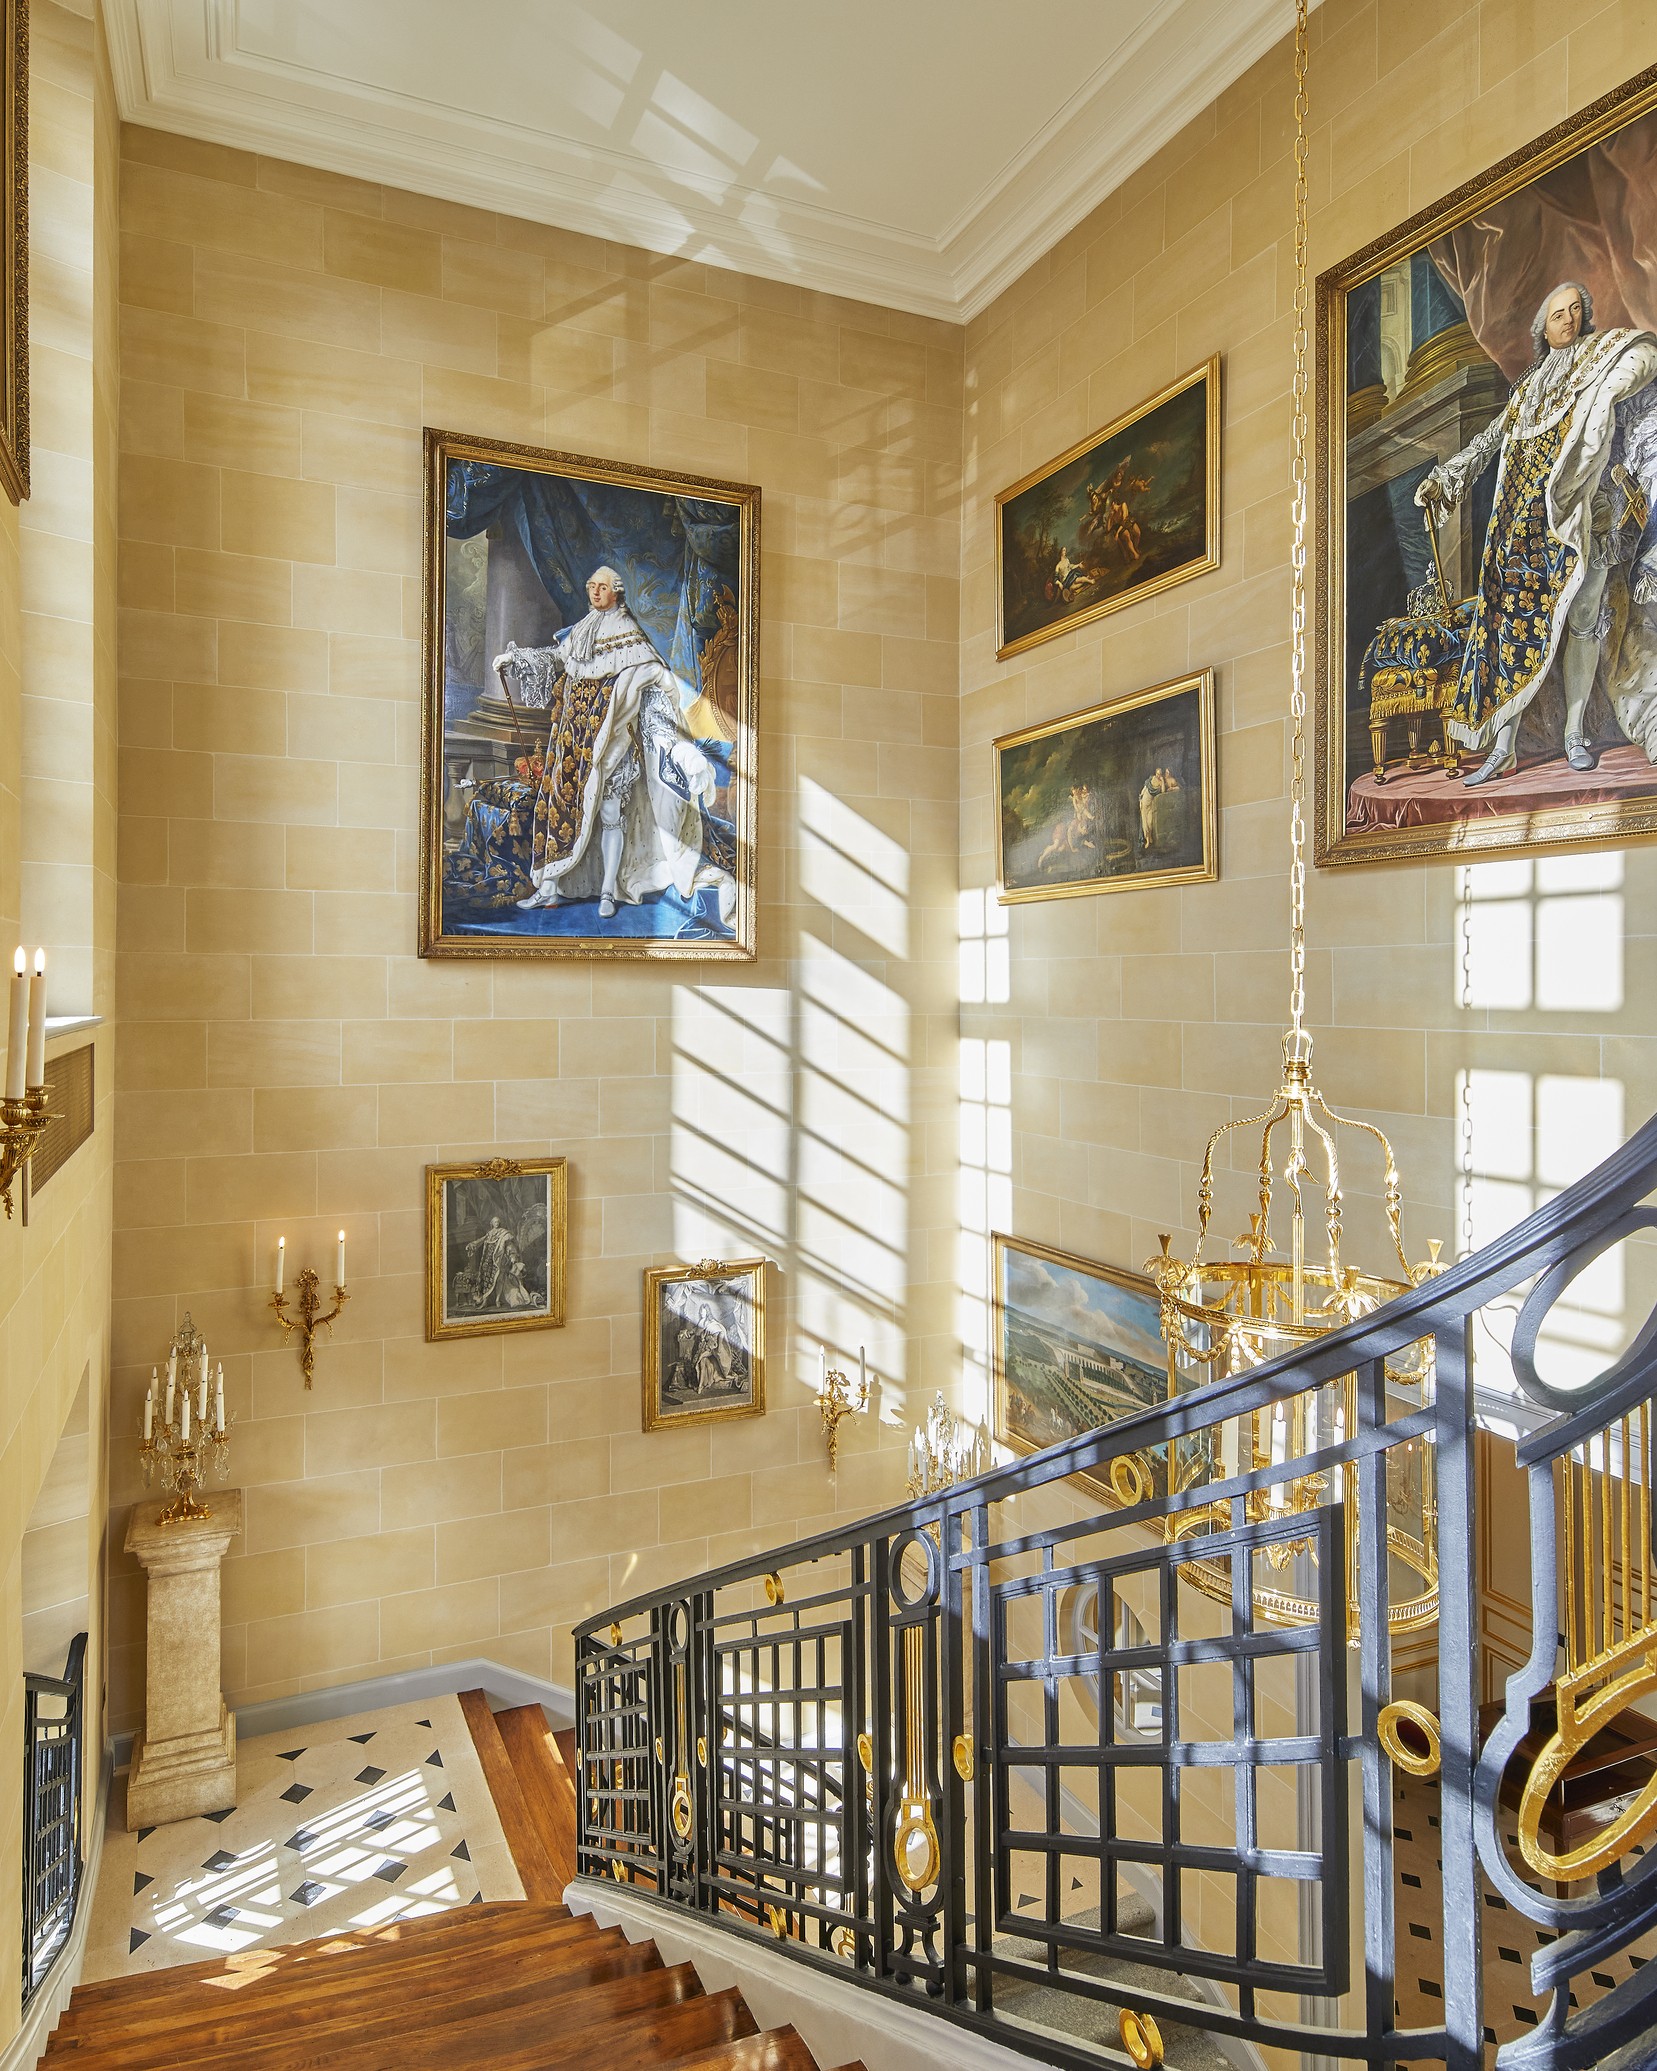 Hotel de luxo é inaugurado no Palácio de Versalhes, com diárias que ultrapassam R$ 154 mil (Foto: Renee Kemps)